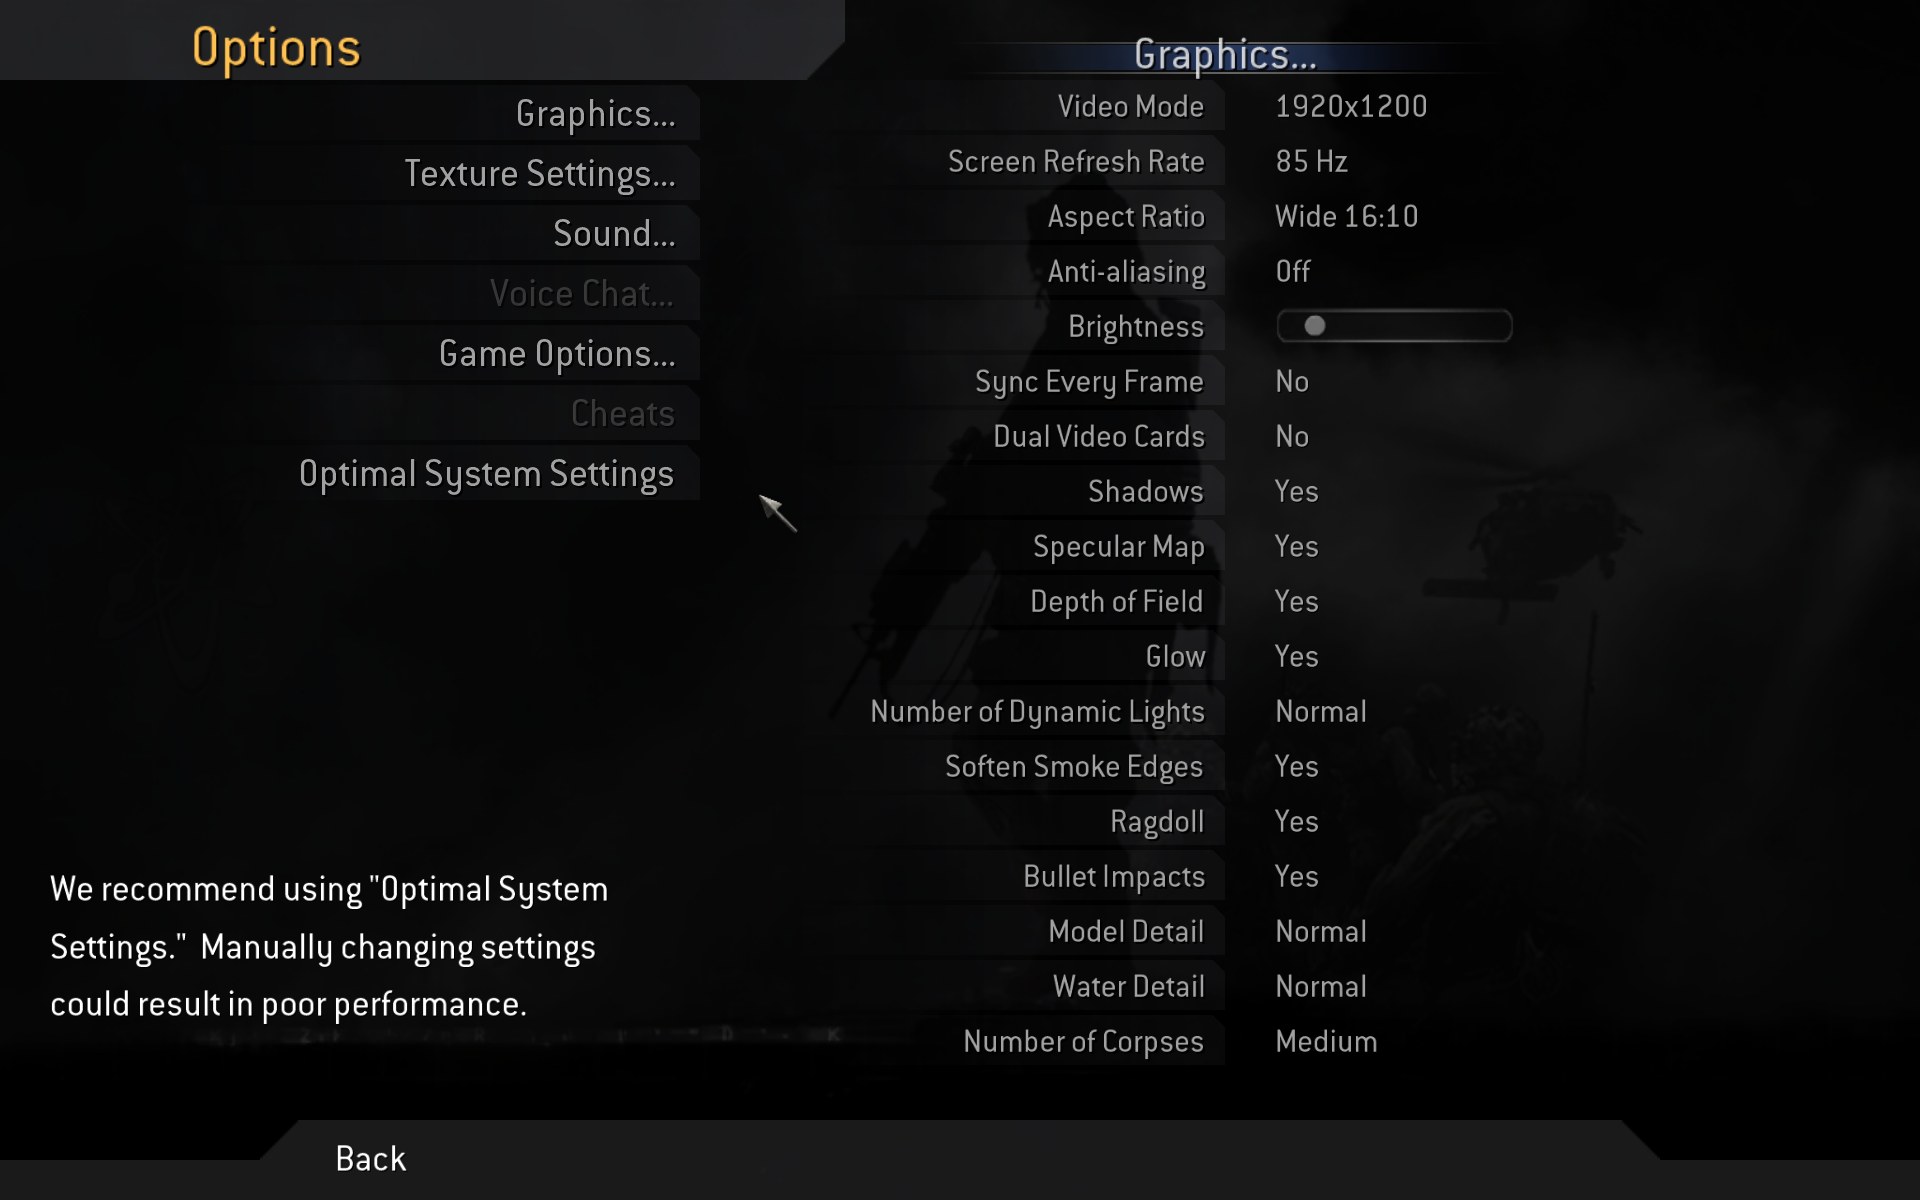 NVIDIA GeForce 9800 GX2, test nejvýkonnější grafické karty na trhu